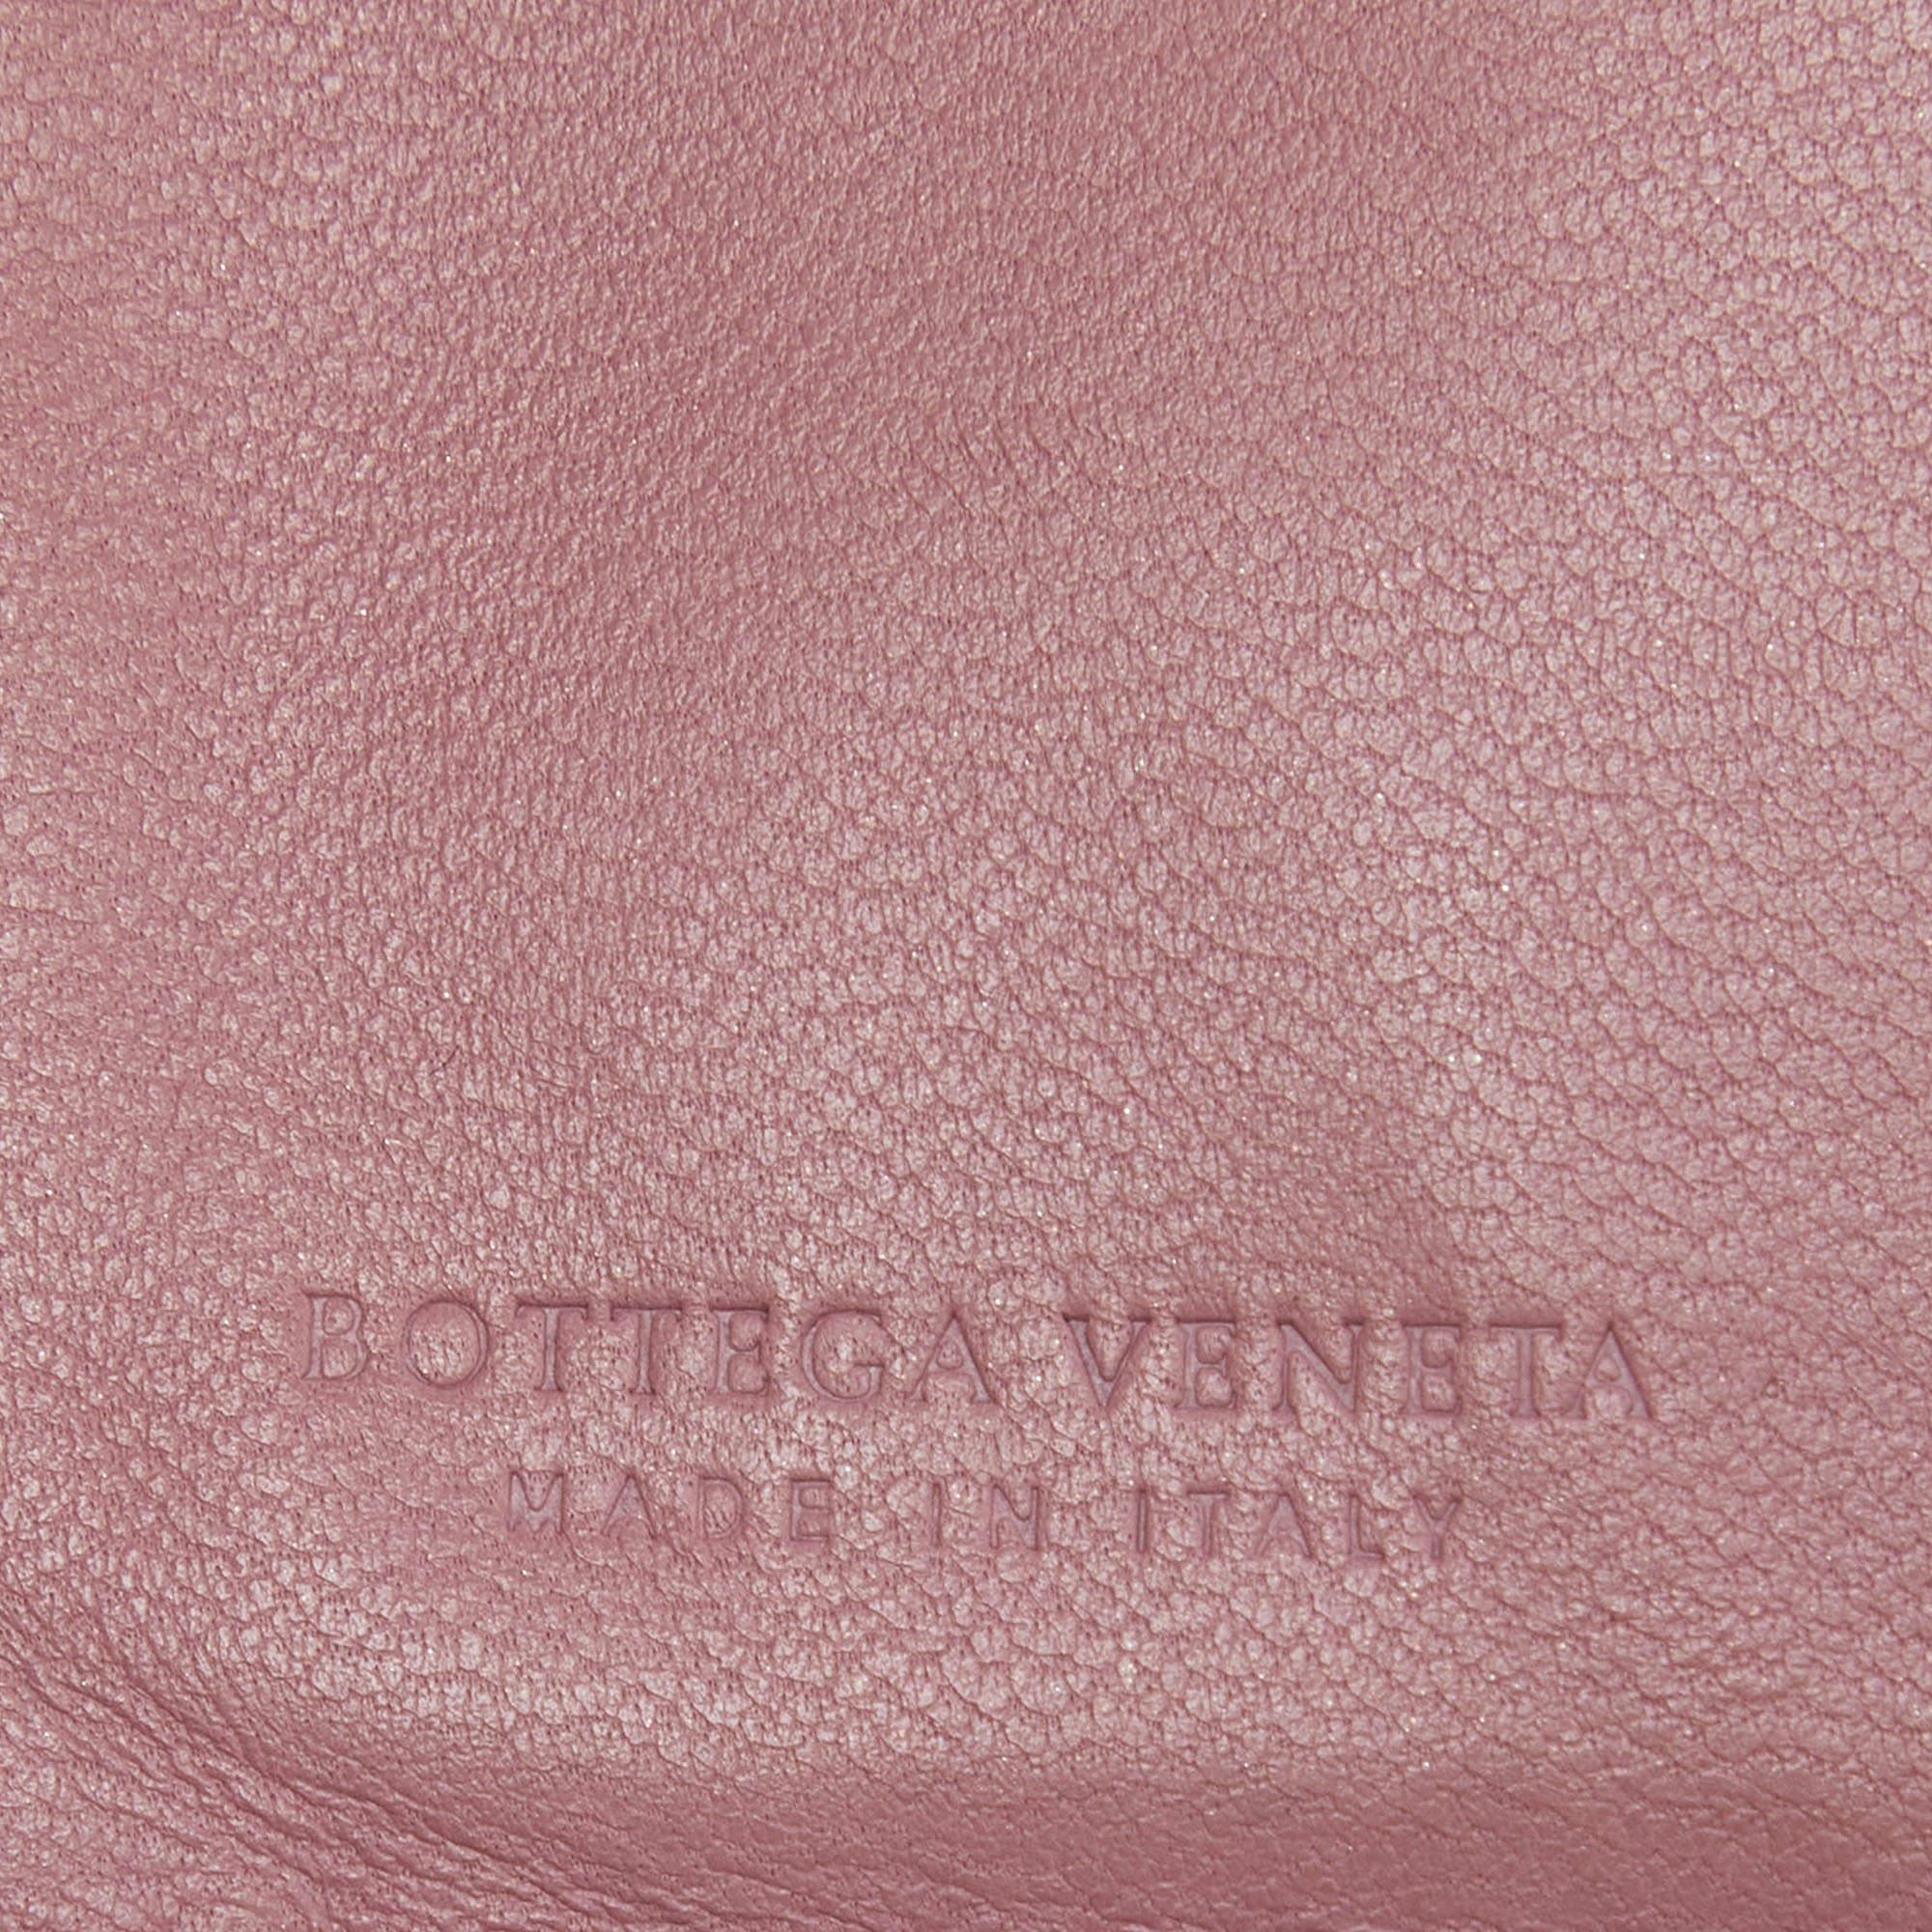 Diese französische Brieftasche von Bottega Veneta ist aus Leder gefertigt und mit einem Intrecciato-Gewebe versehen. Beim Öffnen kommen mehrere Fächer zum Vorschein, in denen Sie Ihre Karten und Ihr Bargeld übersichtlich unterbringen